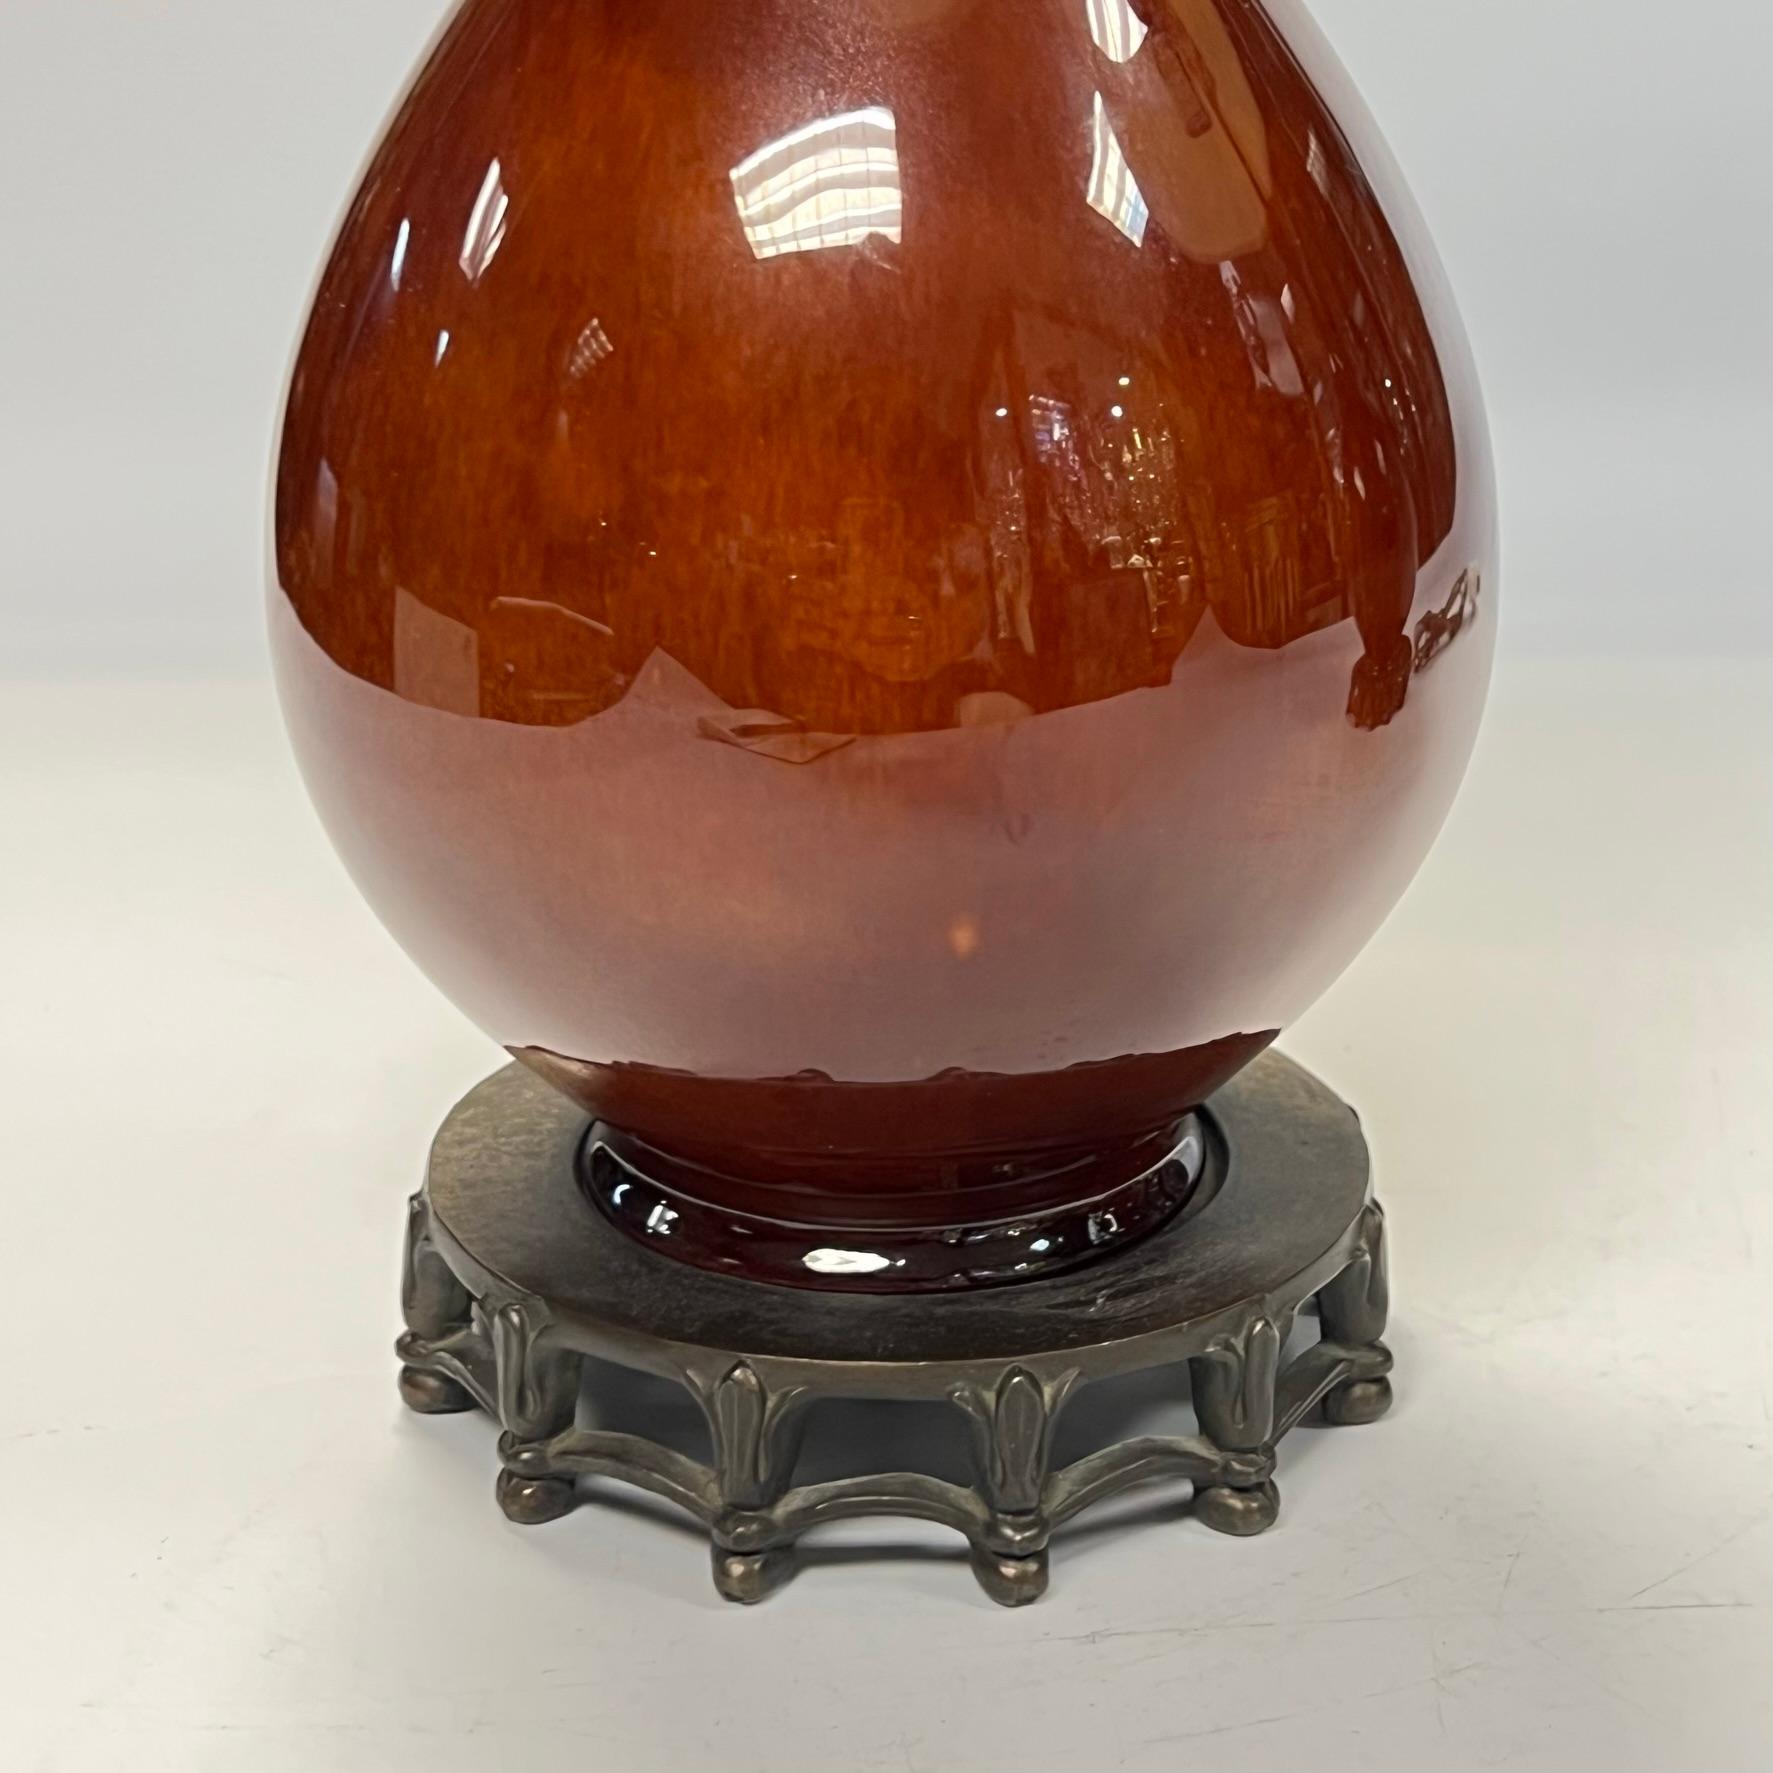 Paar Vintage Porzellan Metall Tischlampen der Vase Form mit gebrannten orange Glasur und patiniert Bronze Sockel.  25,5 bis zu den Flossen und 5 Zoll im Durchmesser, mit Vintage-Schirmen von 13 Zoll im Durchmesser.